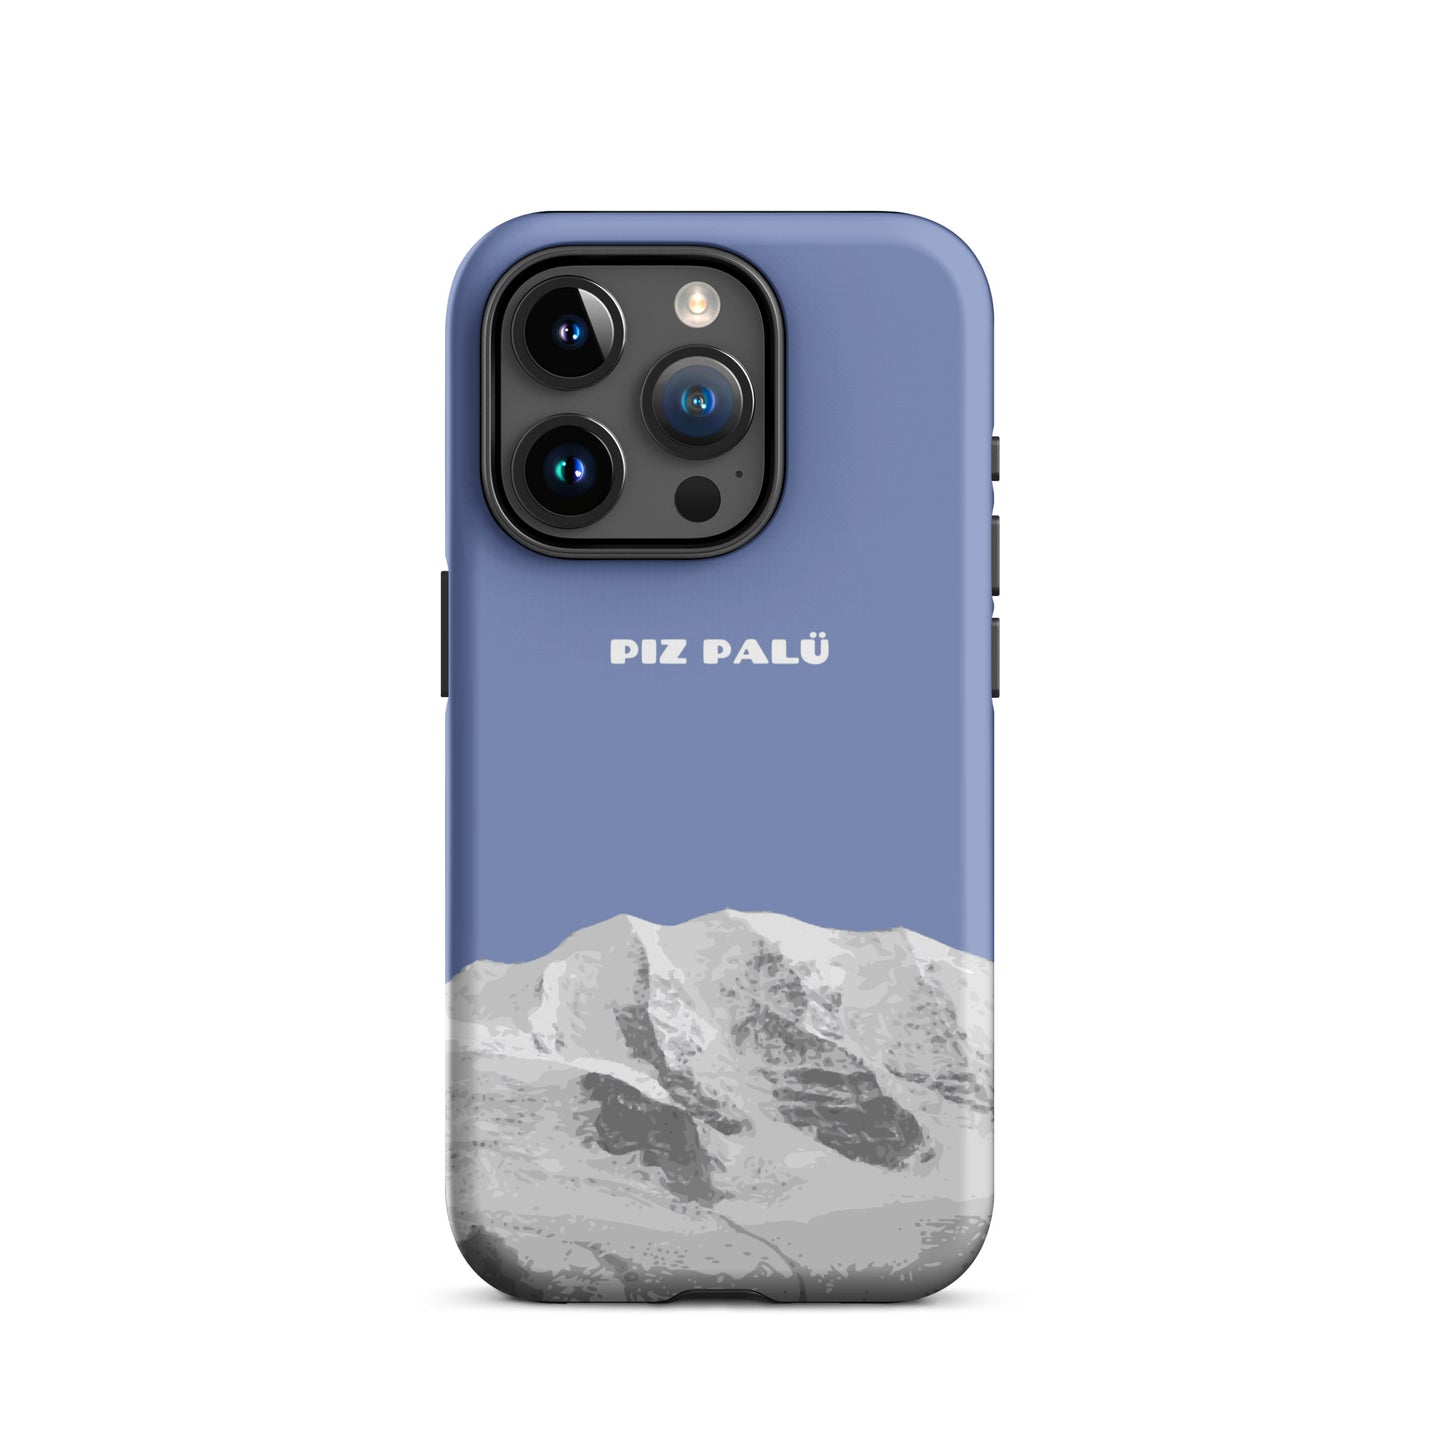 Hülle für das iPhone 15 Pro von Apple in der Farbe Pastellblau, dass den Piz Palü in Graubünden zeigt.